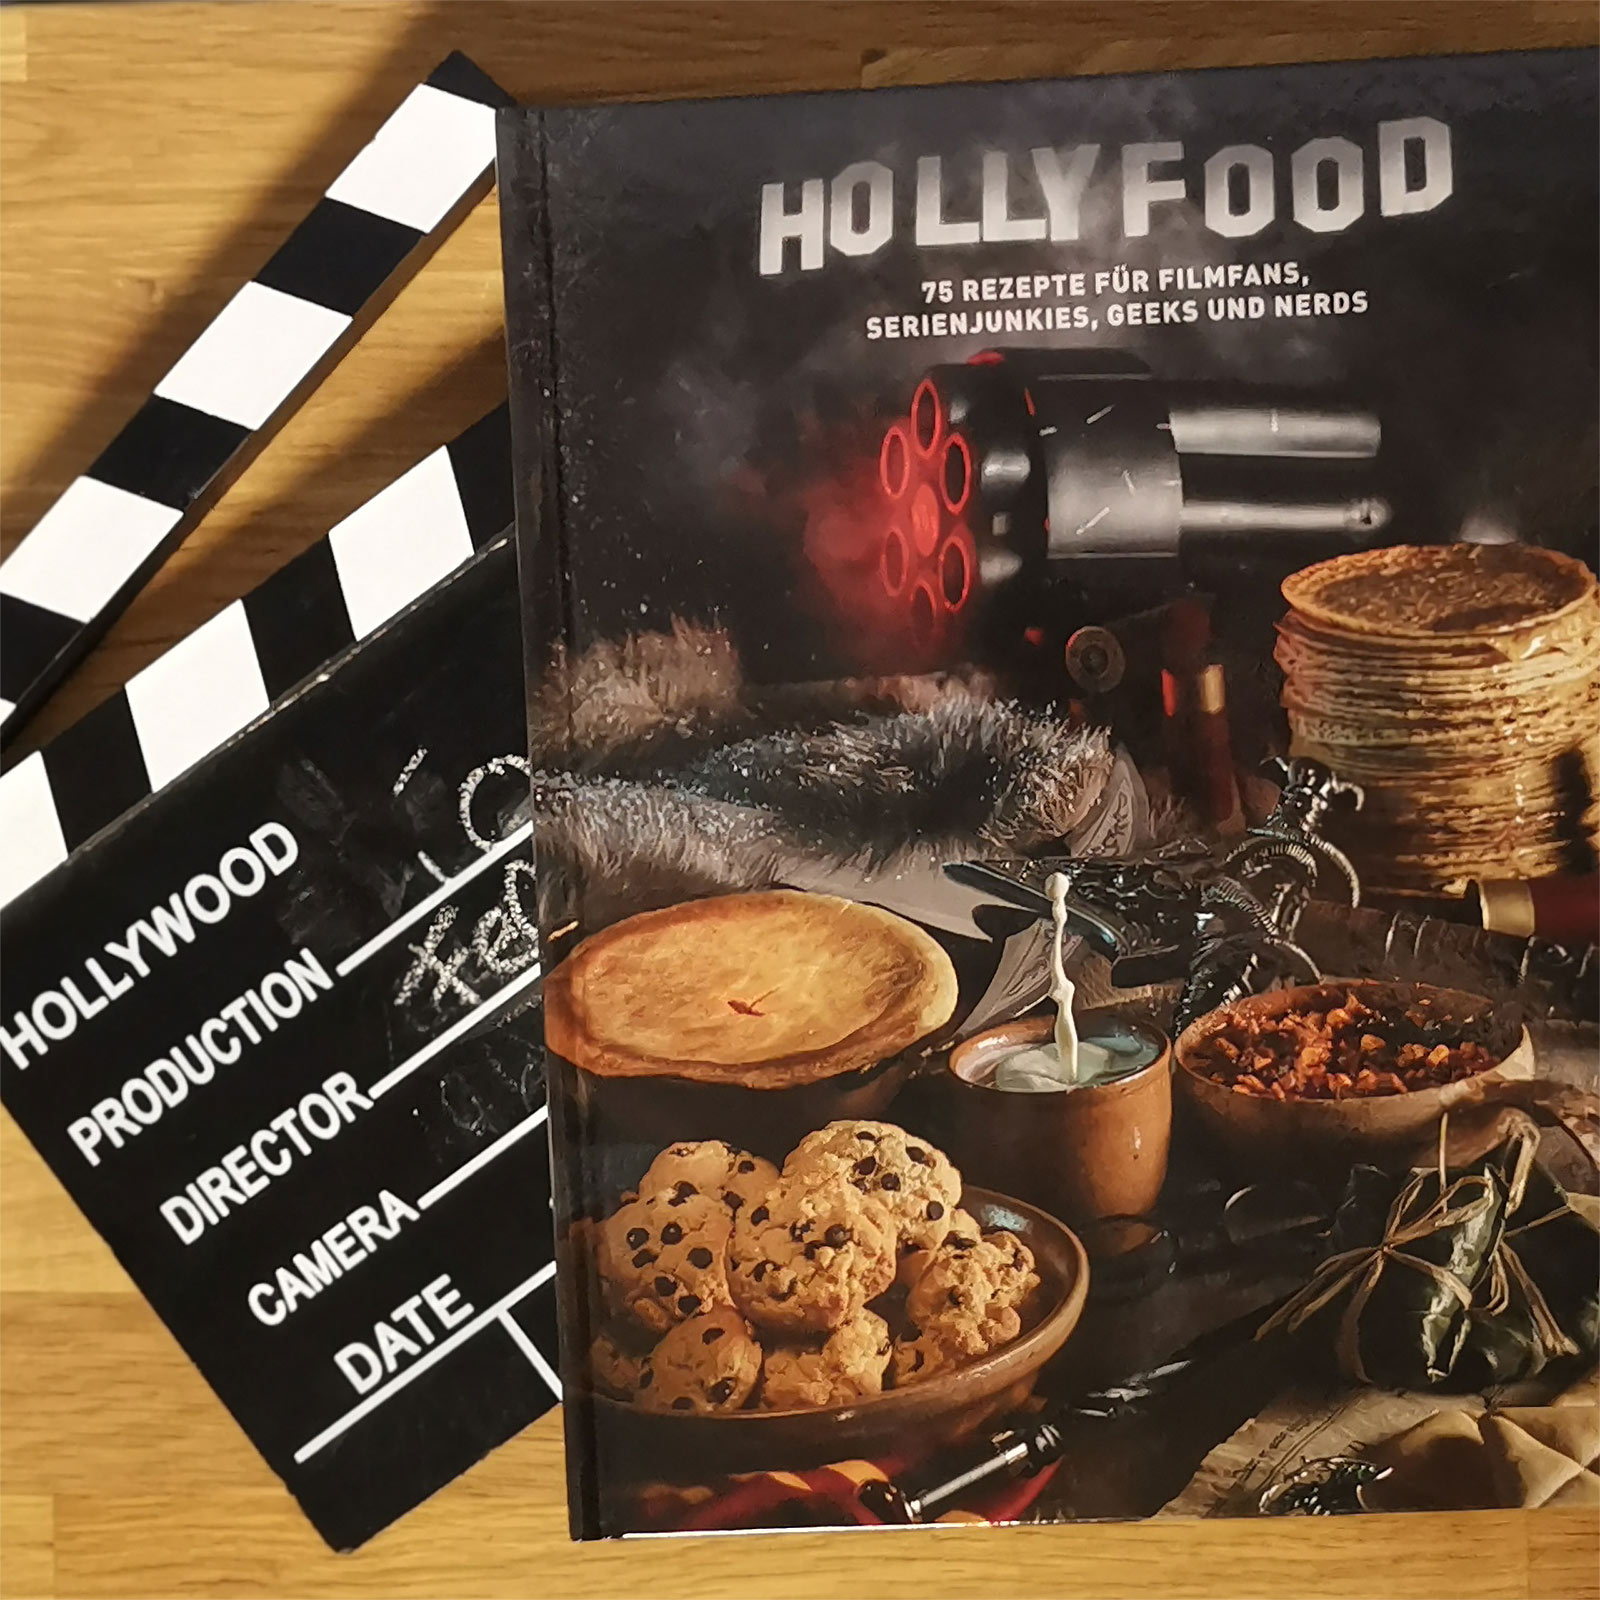 Hollyfood - Livre de cuisine pour les fans de films, les accros aux séries, les geeks et les nerds